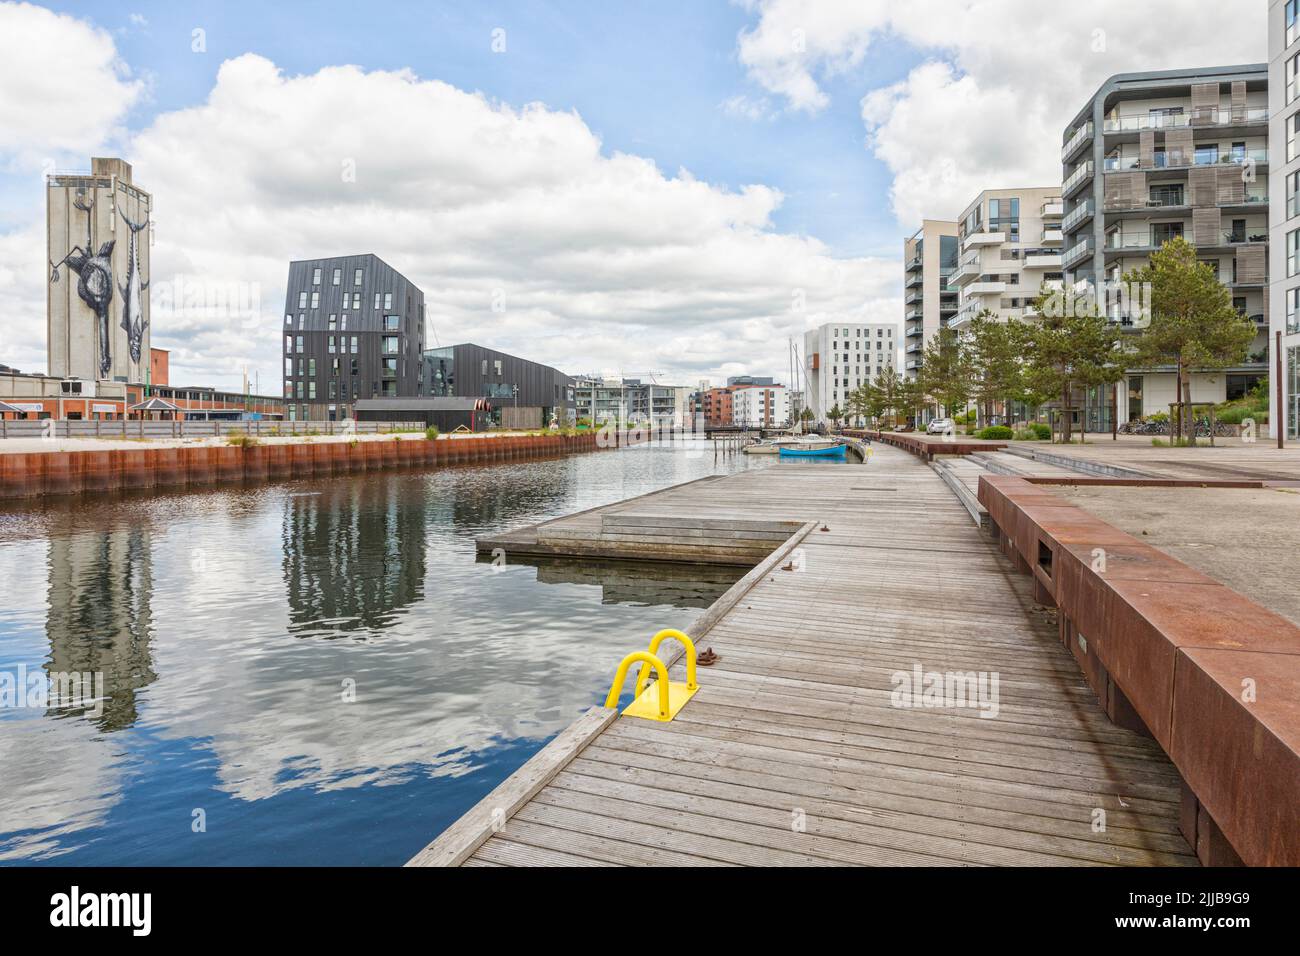 Arquitectura contemporánea y puerto deportivo en el antiguo puerto de Odense Foto de stock